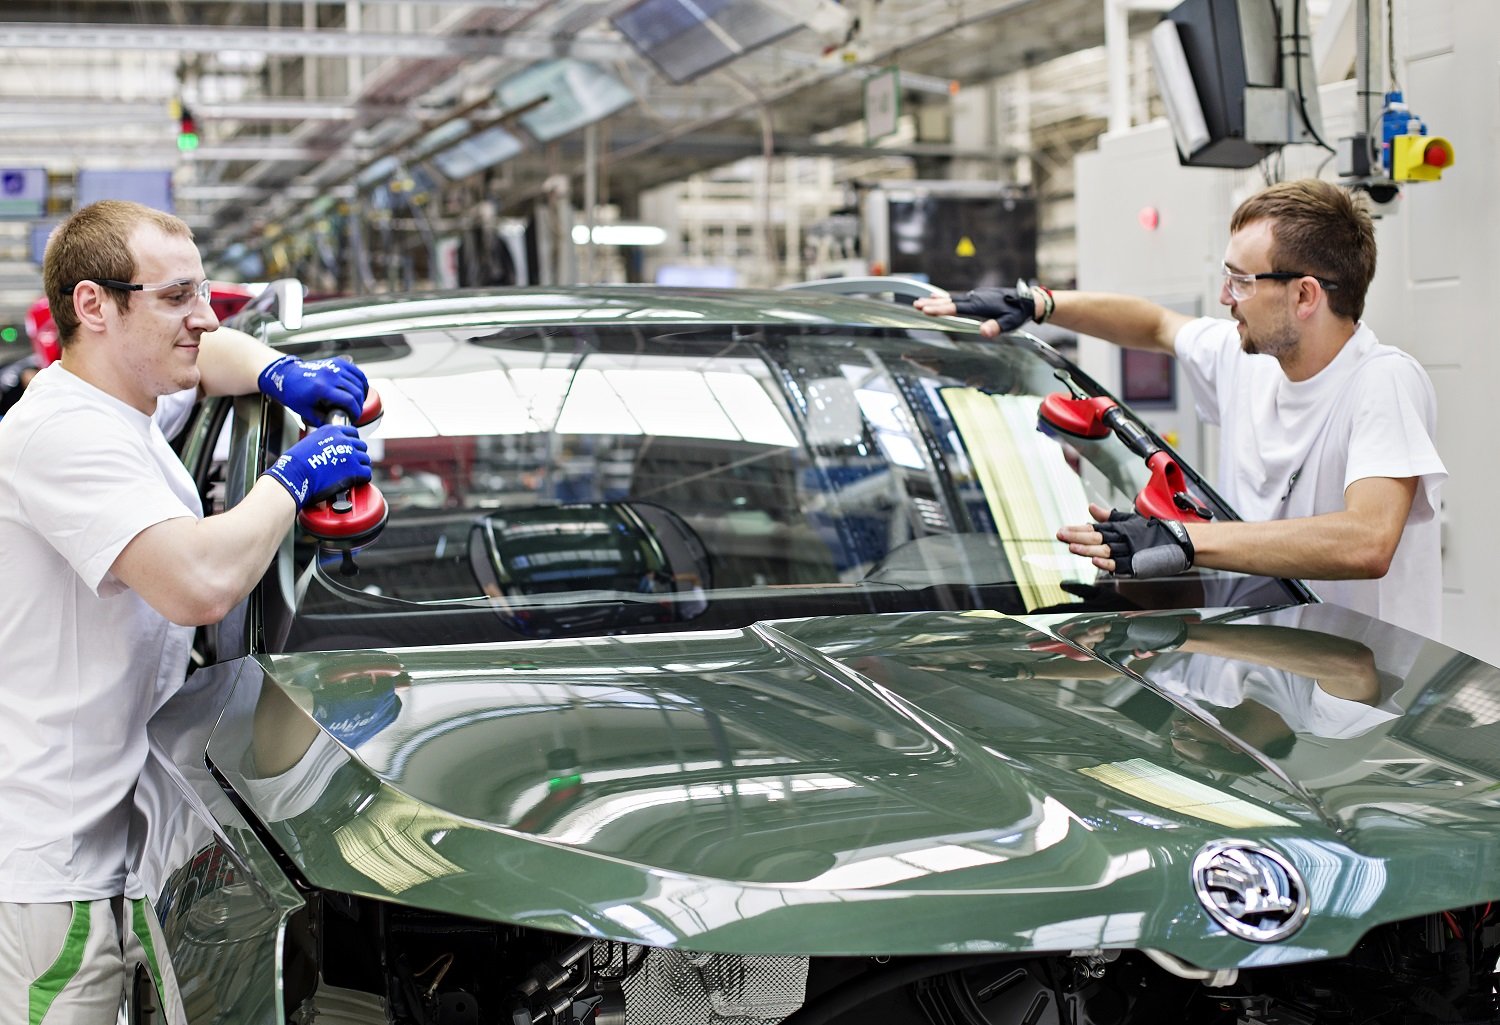 Na počátku srpna sjelo z výrobní linky závodu společnosti Škoda Auto v Kvasinách milionté SUV značky Škoda. Jubilejní vůz Škoda Karoq zamíří k zákazníkovi ve Španělsku